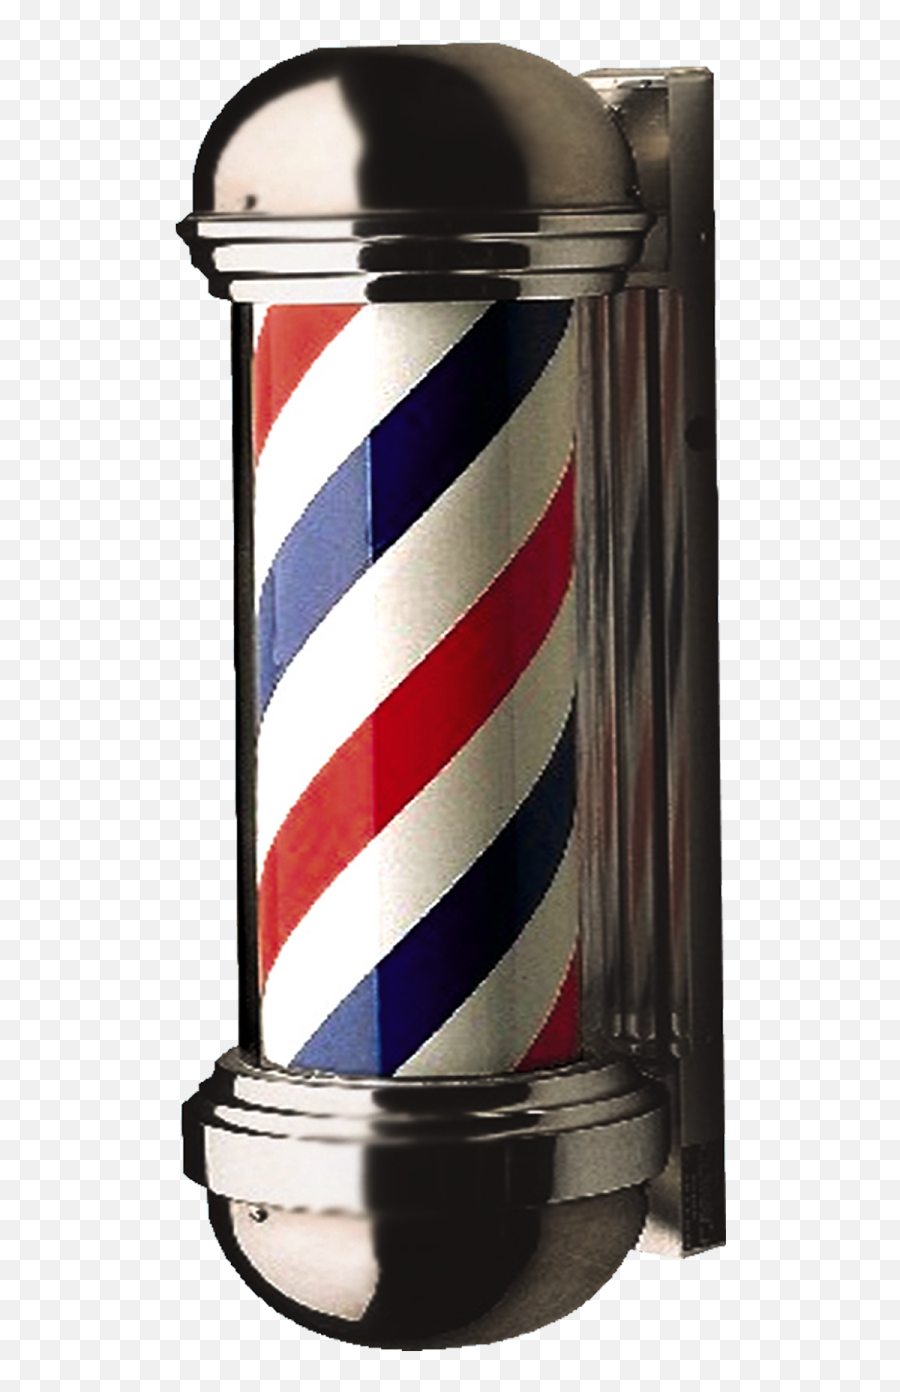 Barber Pole Png U0026 Free Barber Polepng Transparent Images - Png Barber Pole Emoji,Pole Emoji